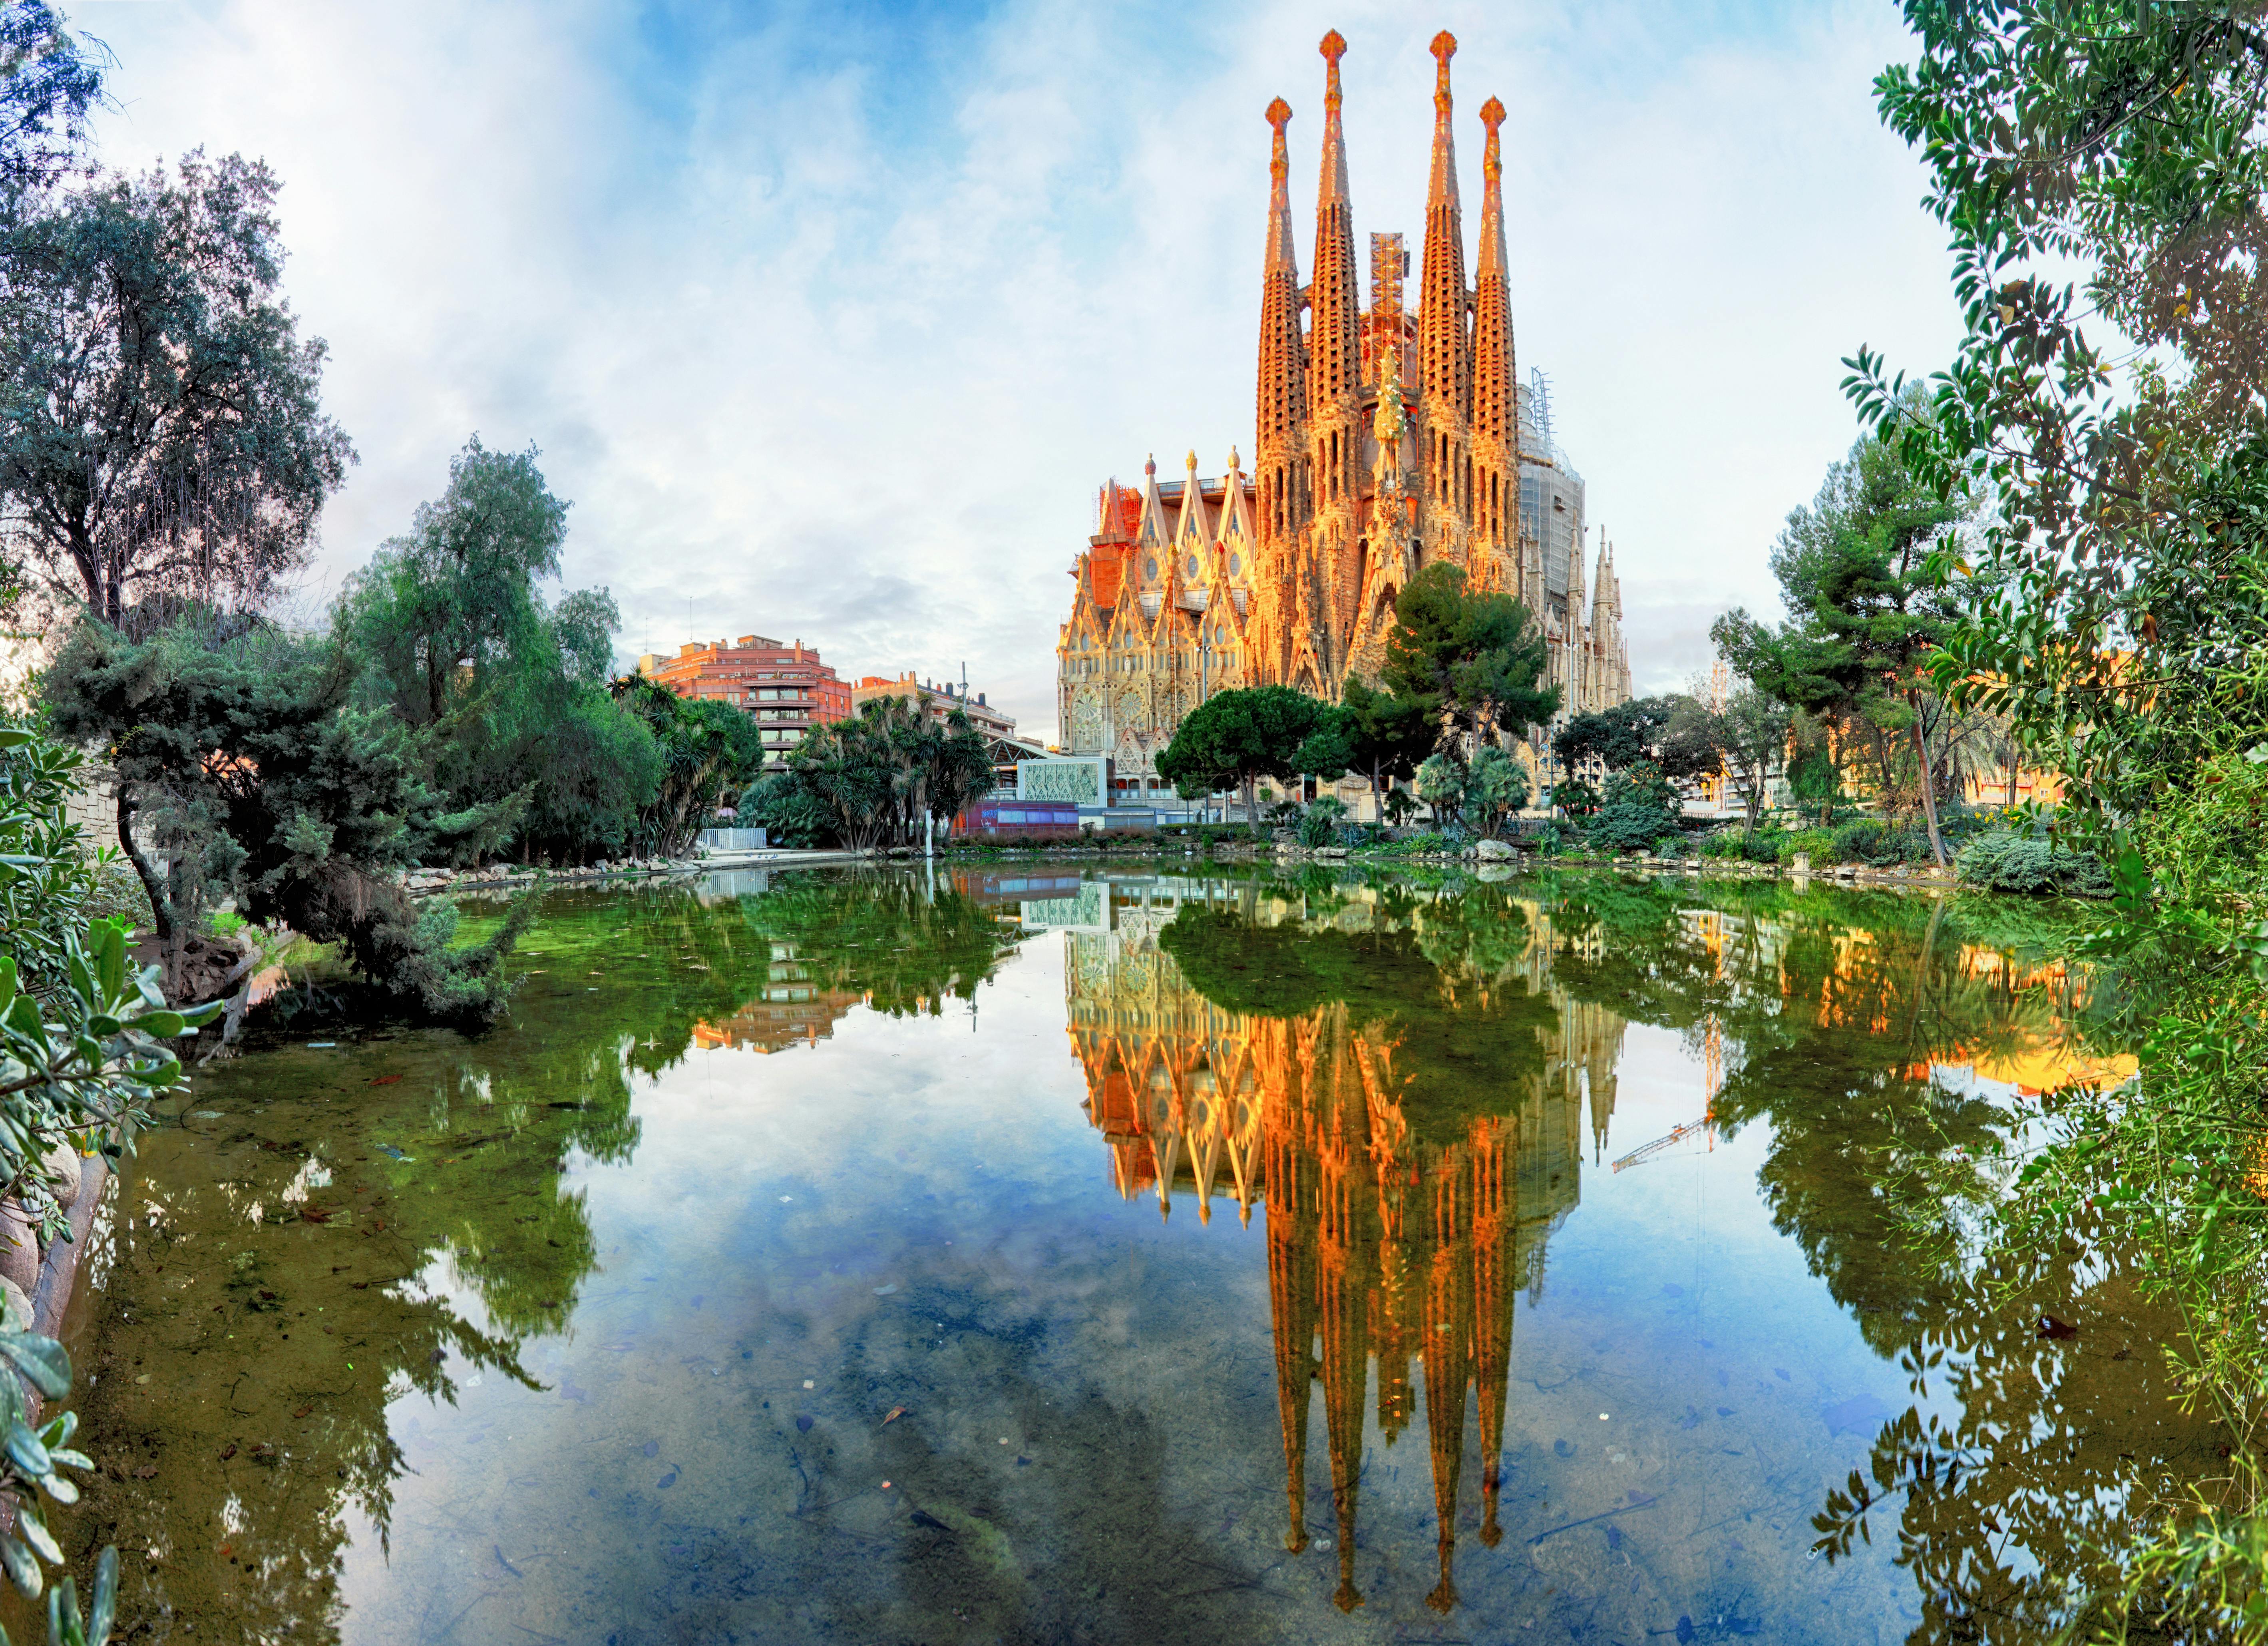 Excursión por lo mejor de la costa de Barcelona con acceso sin colas a la Sagrada Familia